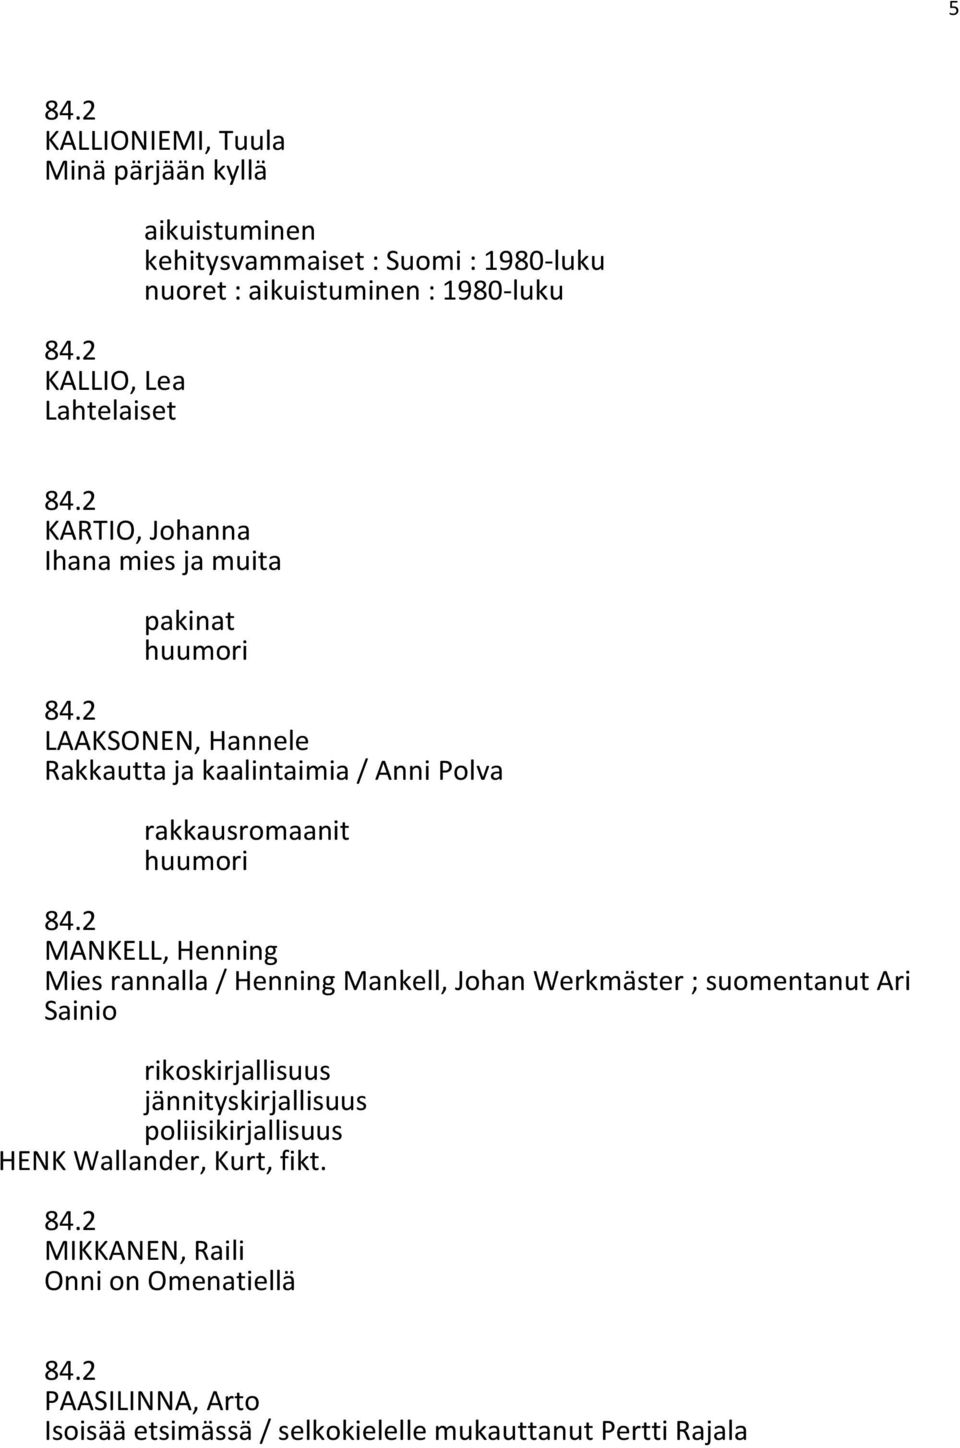 MANKELL, Henning Mies rannalla / Henning Mankell, Johan Werkmäster ; suomentanut Ari Sainio rikoskirjallisuus jännityskirjallisuus